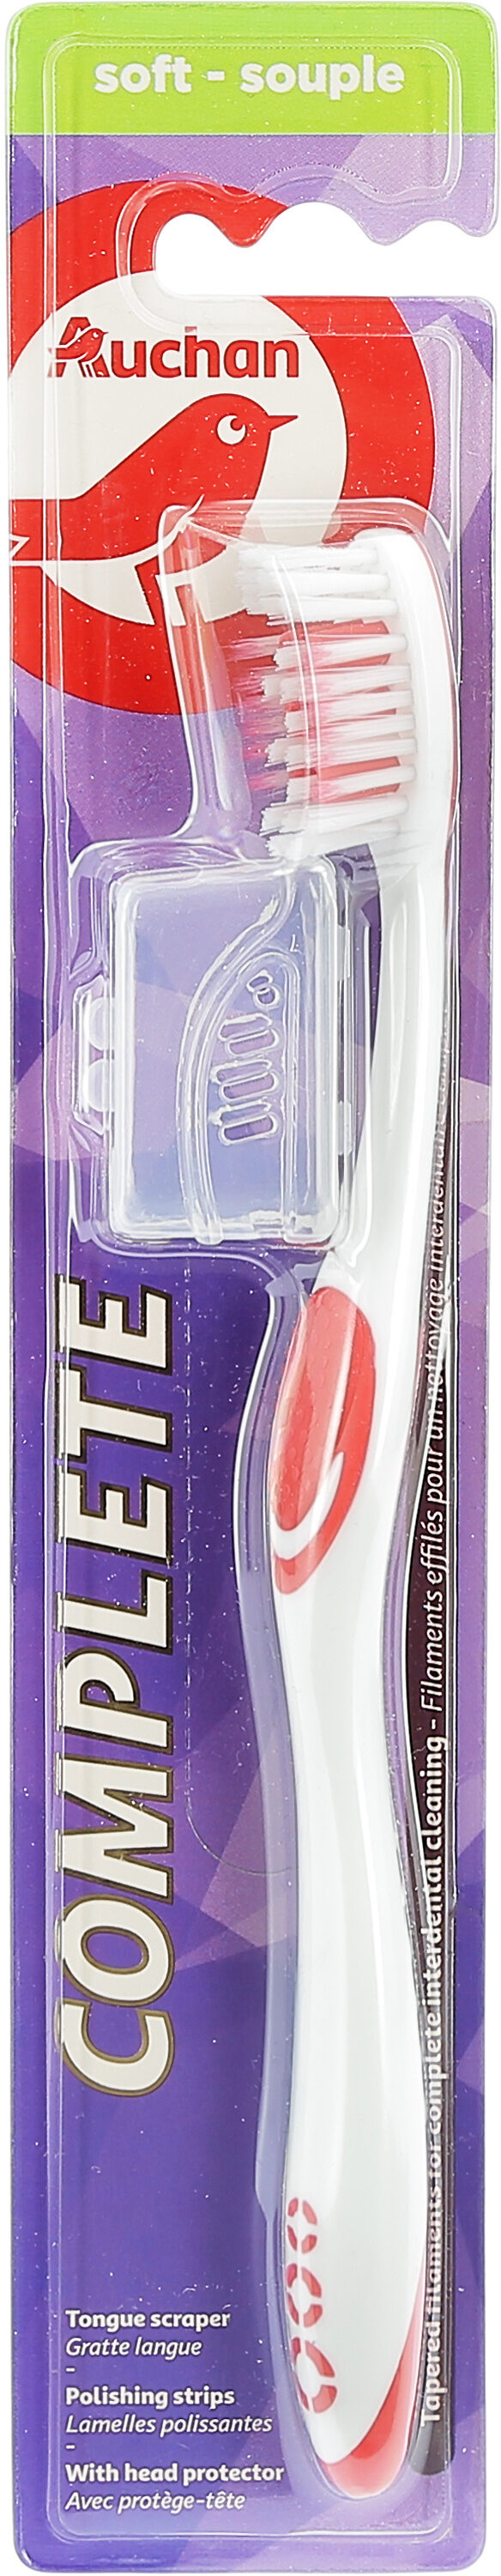 Brosse à dents Classique souple - Product - fr